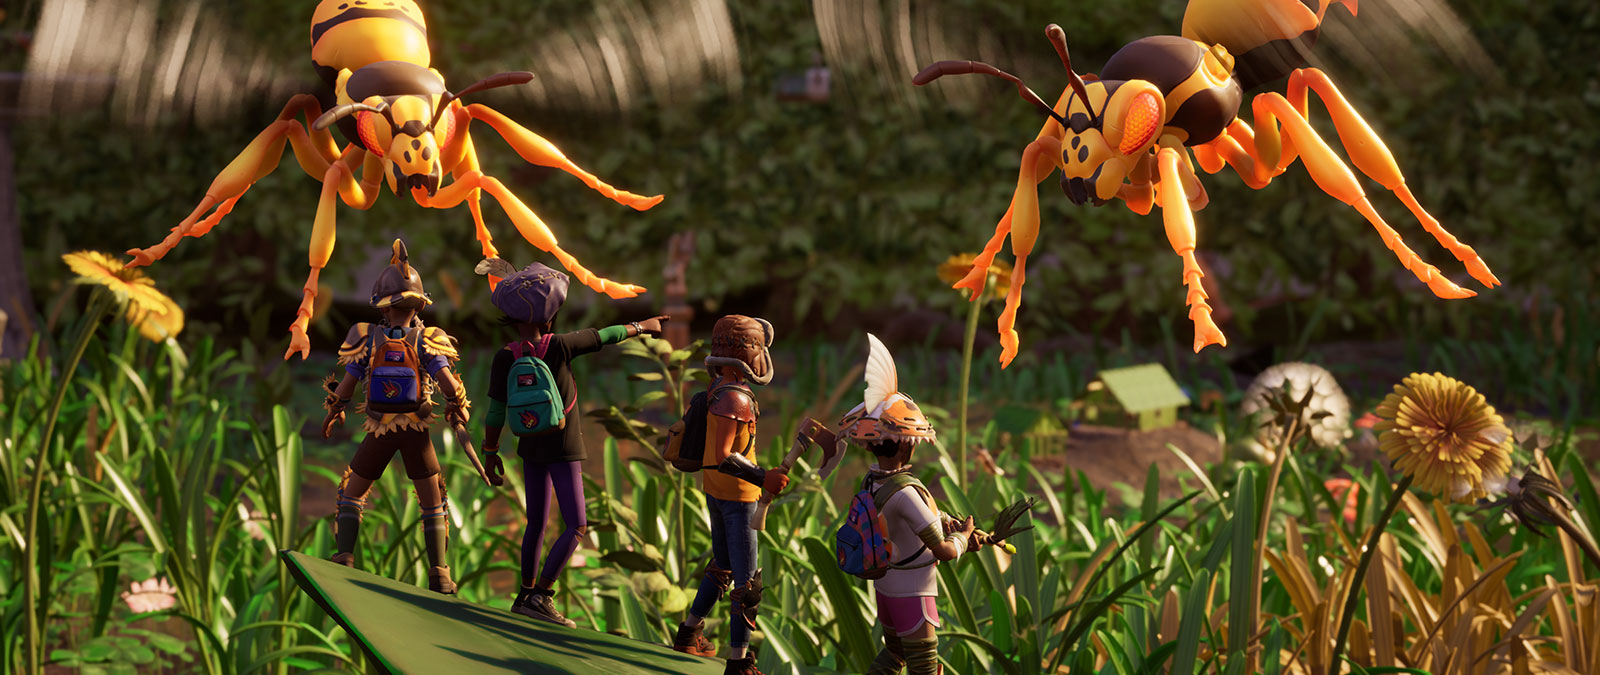 İki arı, otlarla sarılı bir arka bahçede toplanmış dört minyatür insandan oluşan bir grubun yakınında uçuyor.